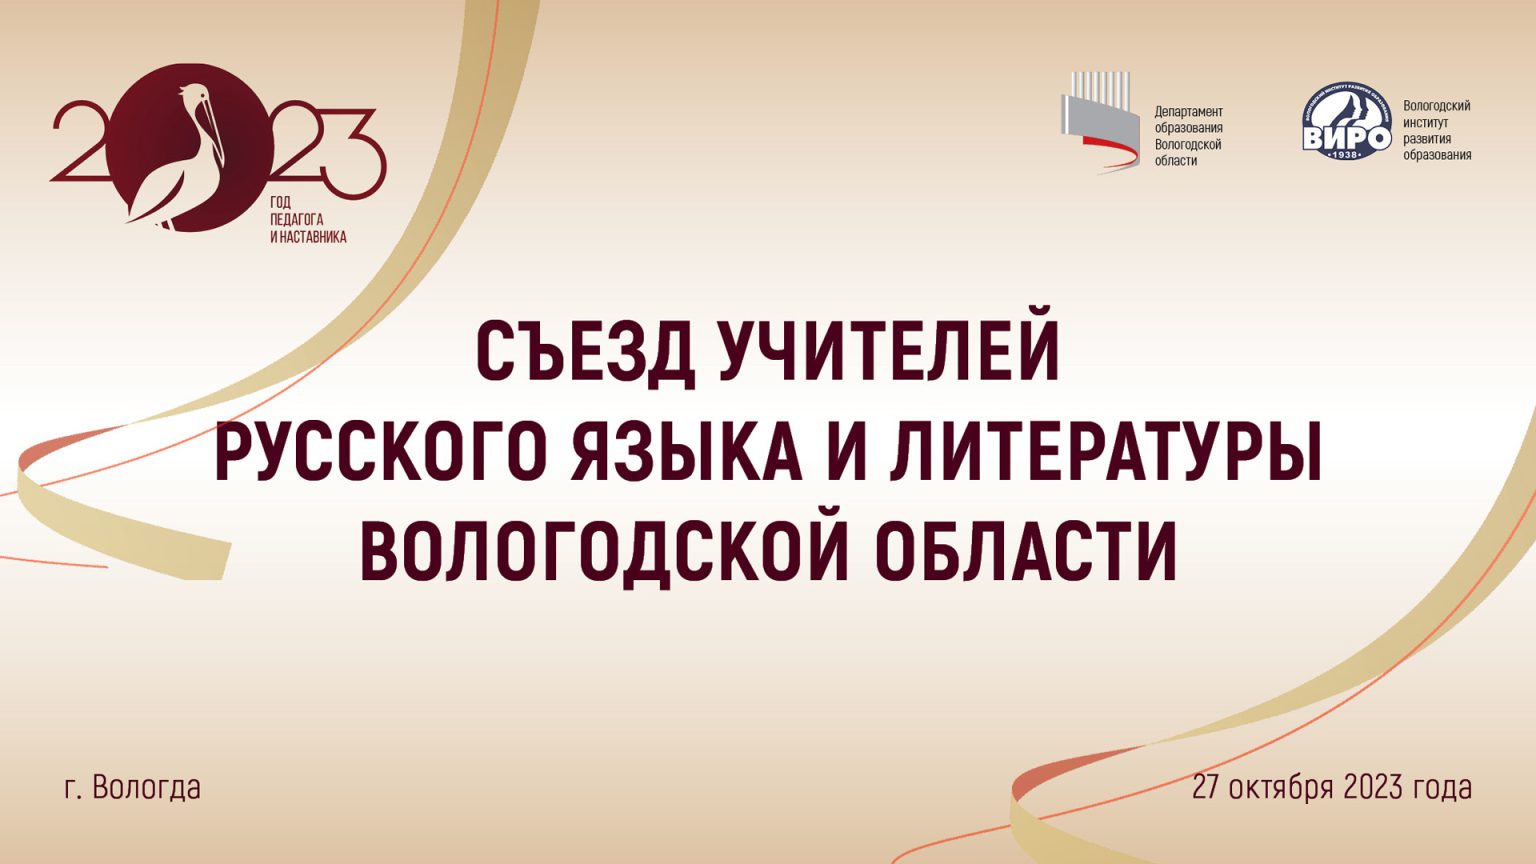 Учителя русского языка и литературы встретятся на Съезде.